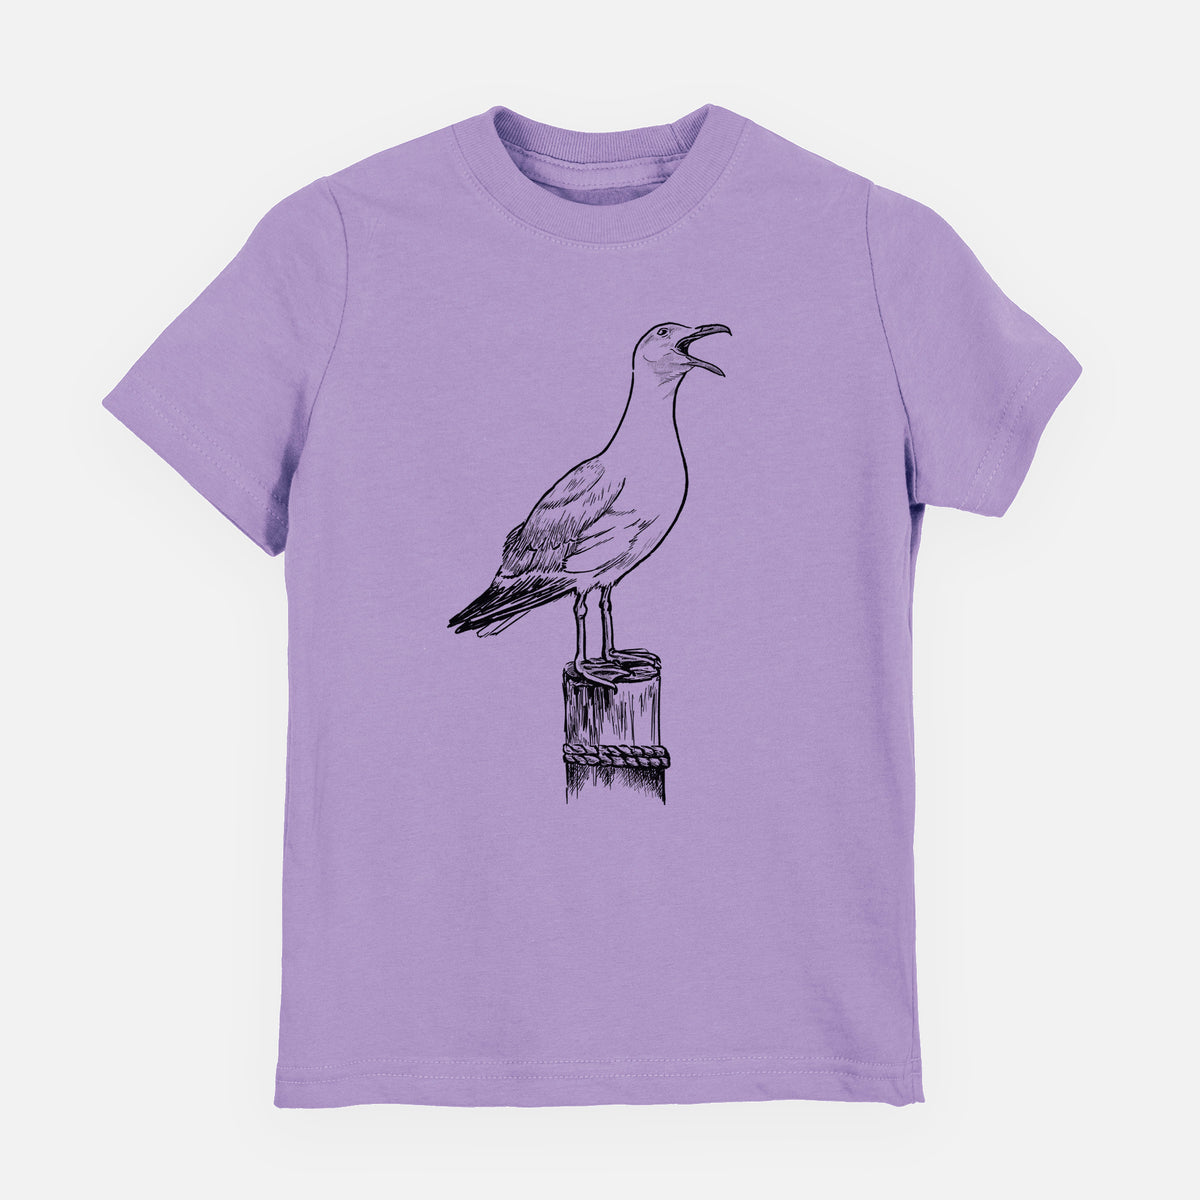 California Gull - Larus californicus - Youth Shirt